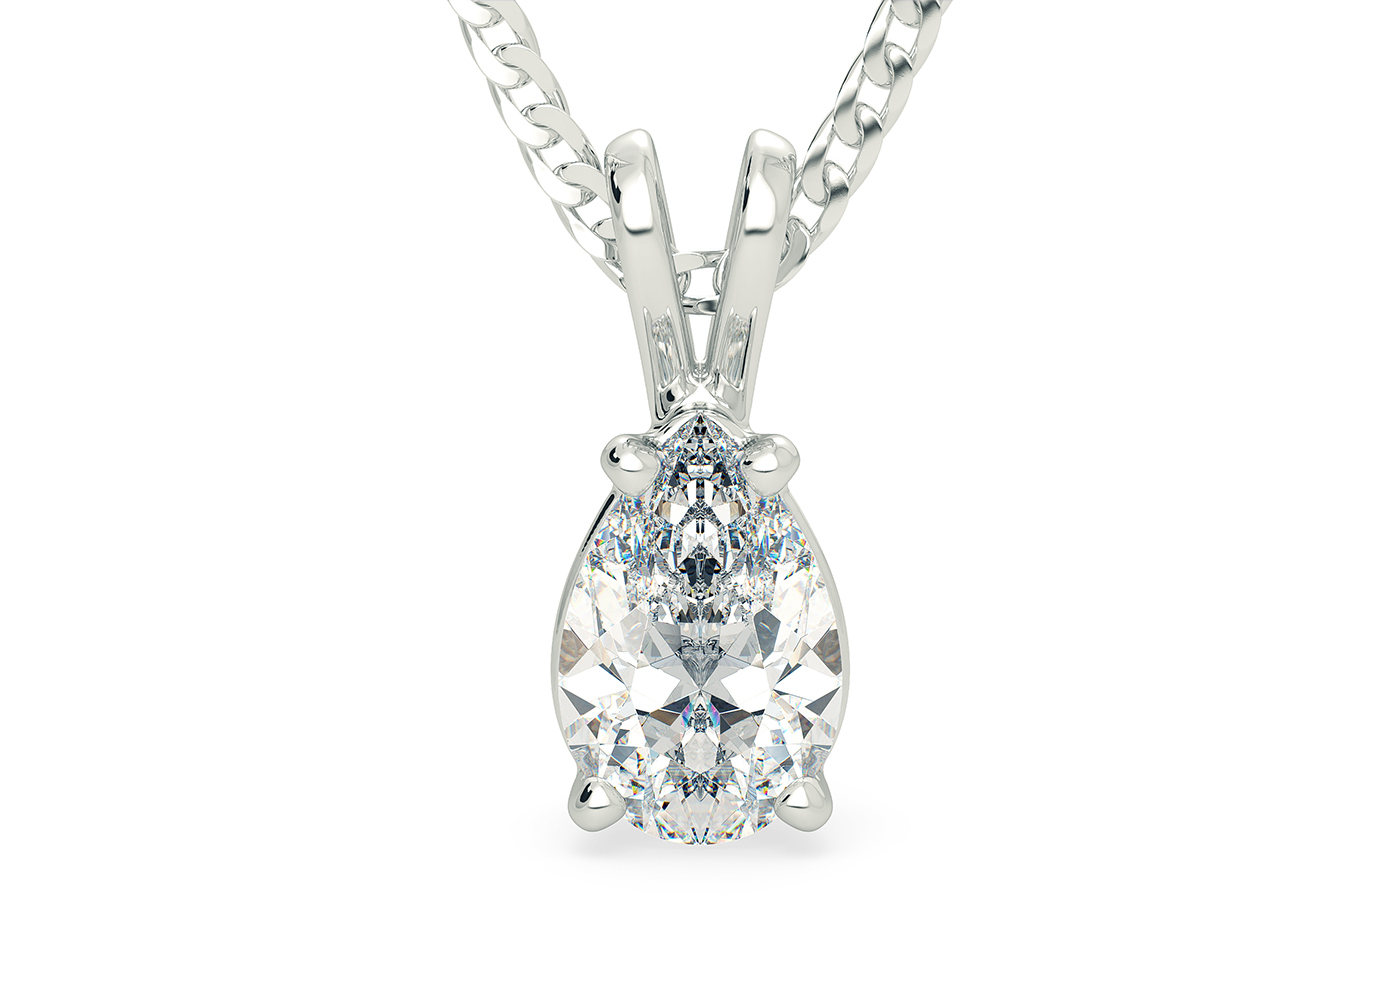 Two Carat Pear Diamond Pendant in Platinum 950